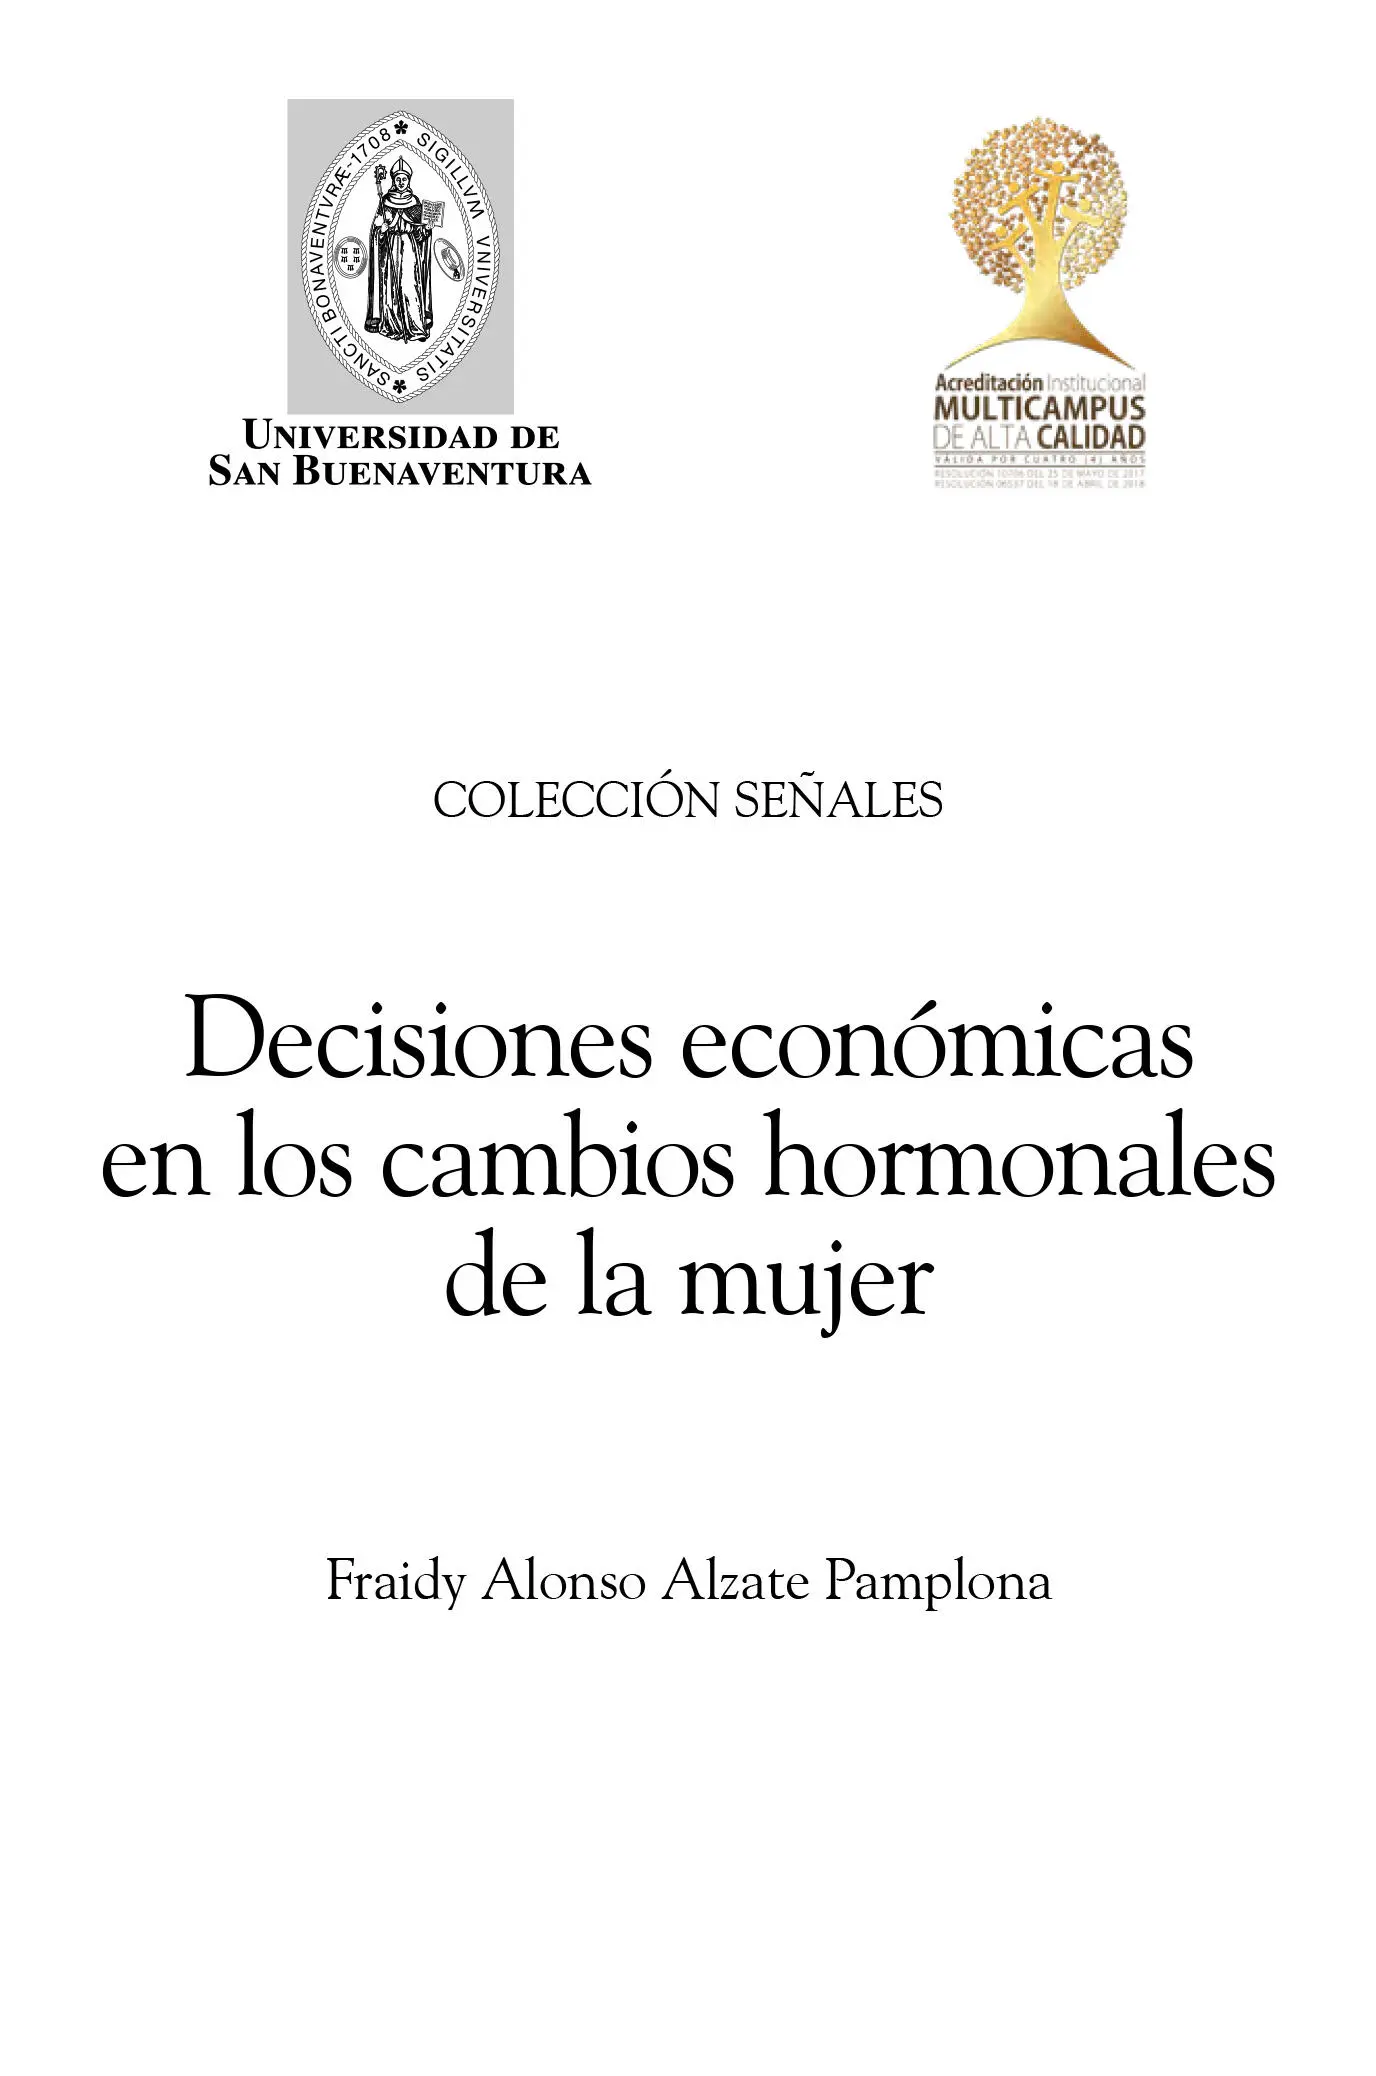 Alzate Pamplona Fraidy Alonso Decisiones económicas en los cambios hormonales - фото 3